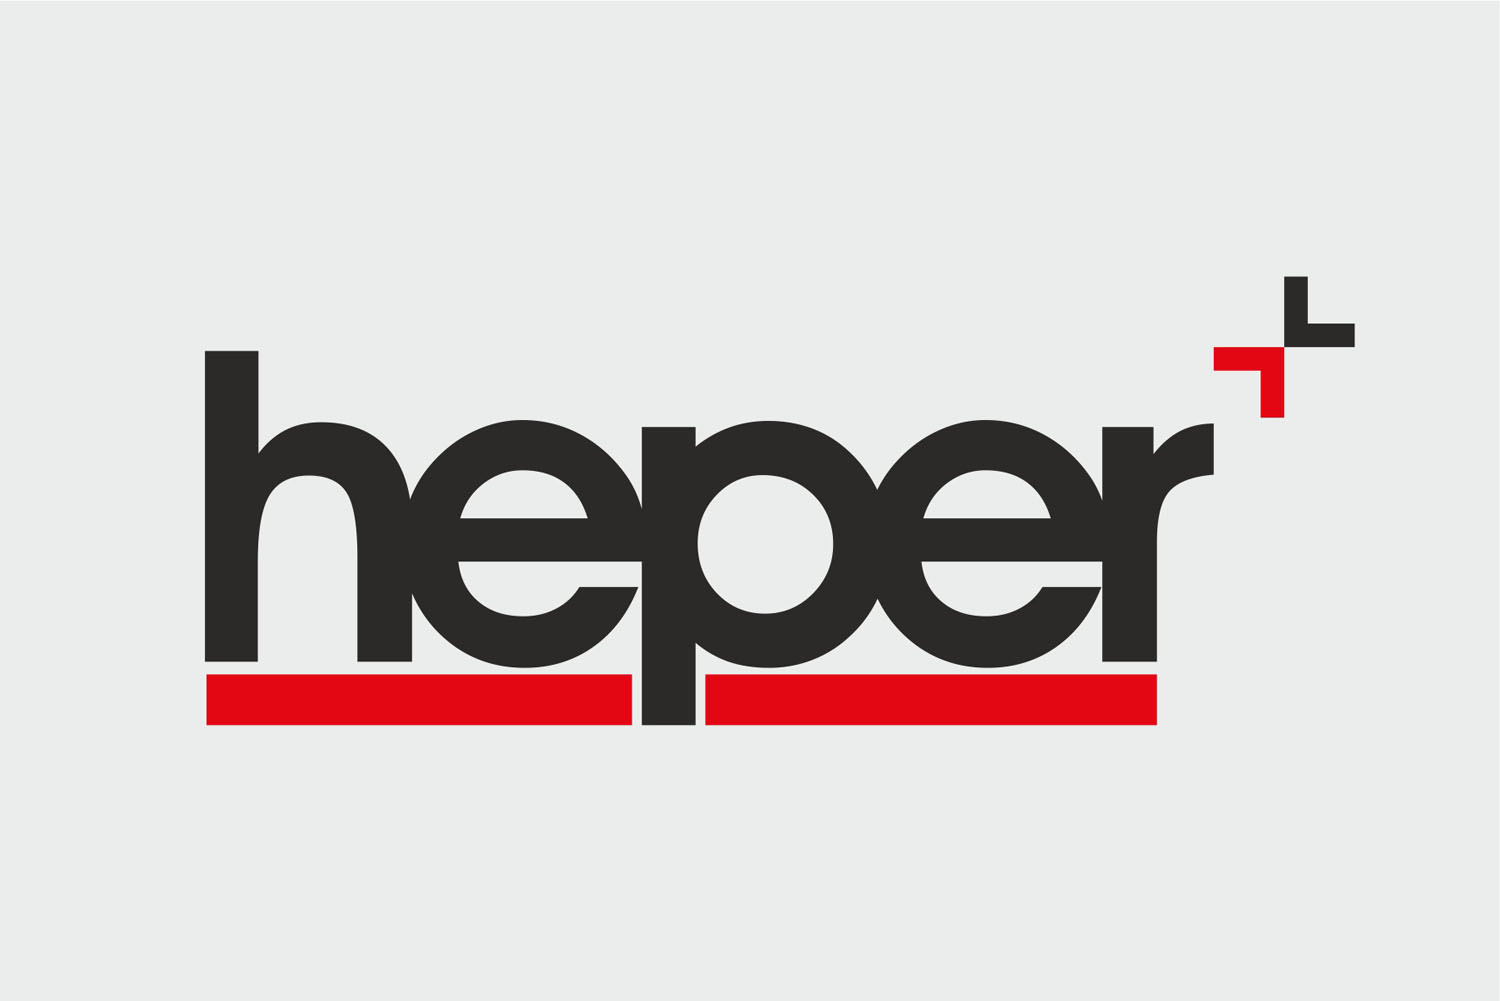 Heper